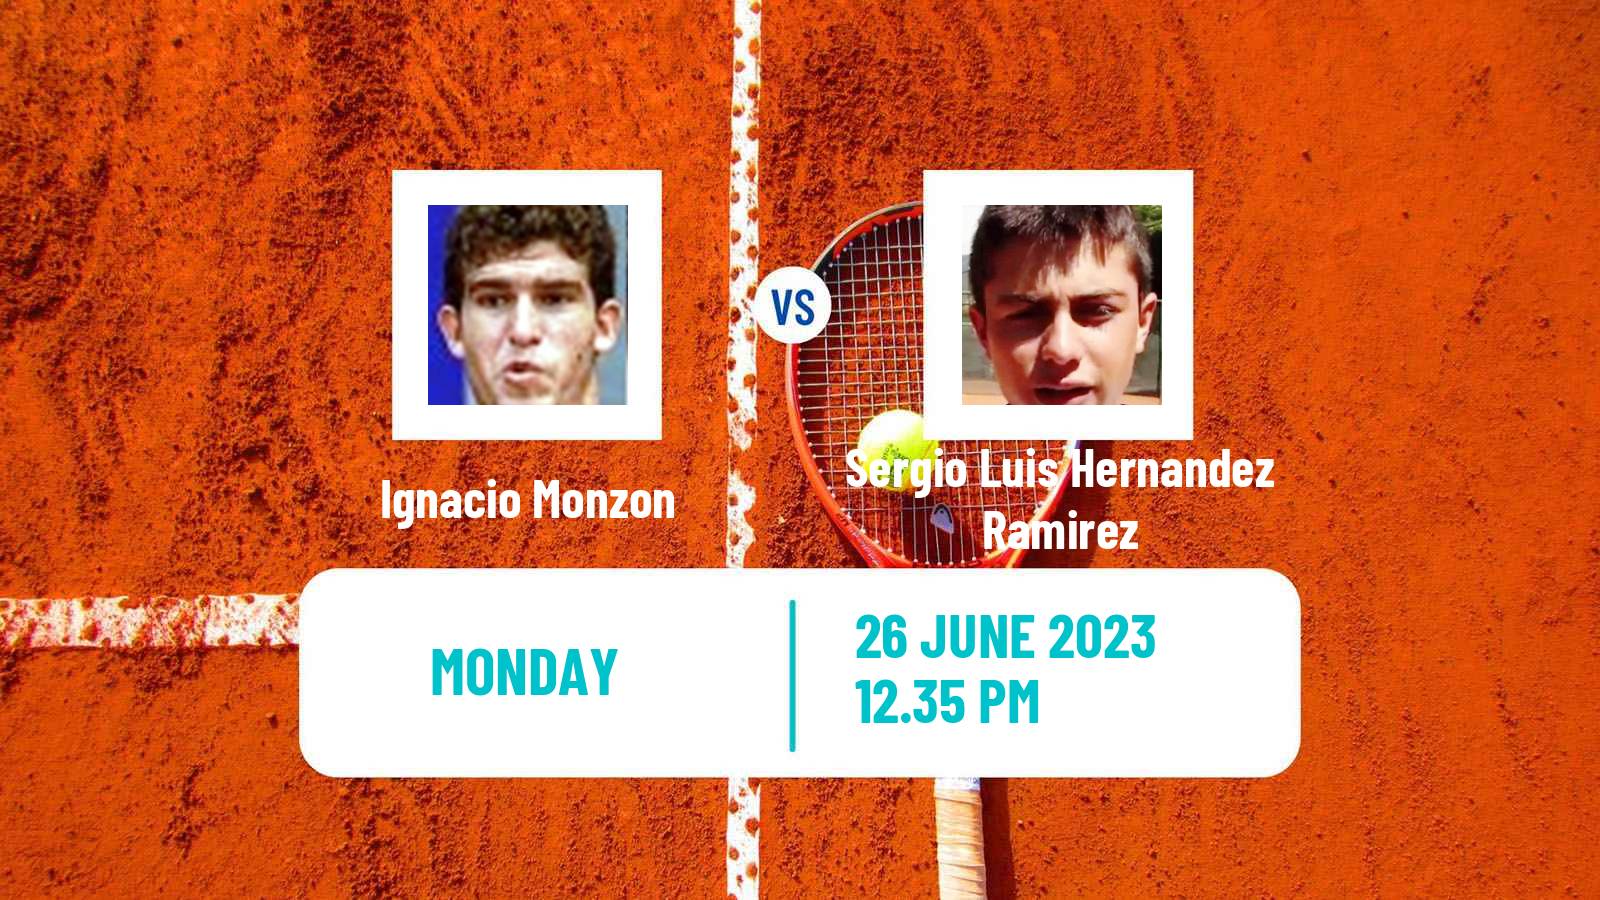 Tennis Medellin Challenger Men Ignacio Monzon - Sergio Luis Hernandez Ramirez